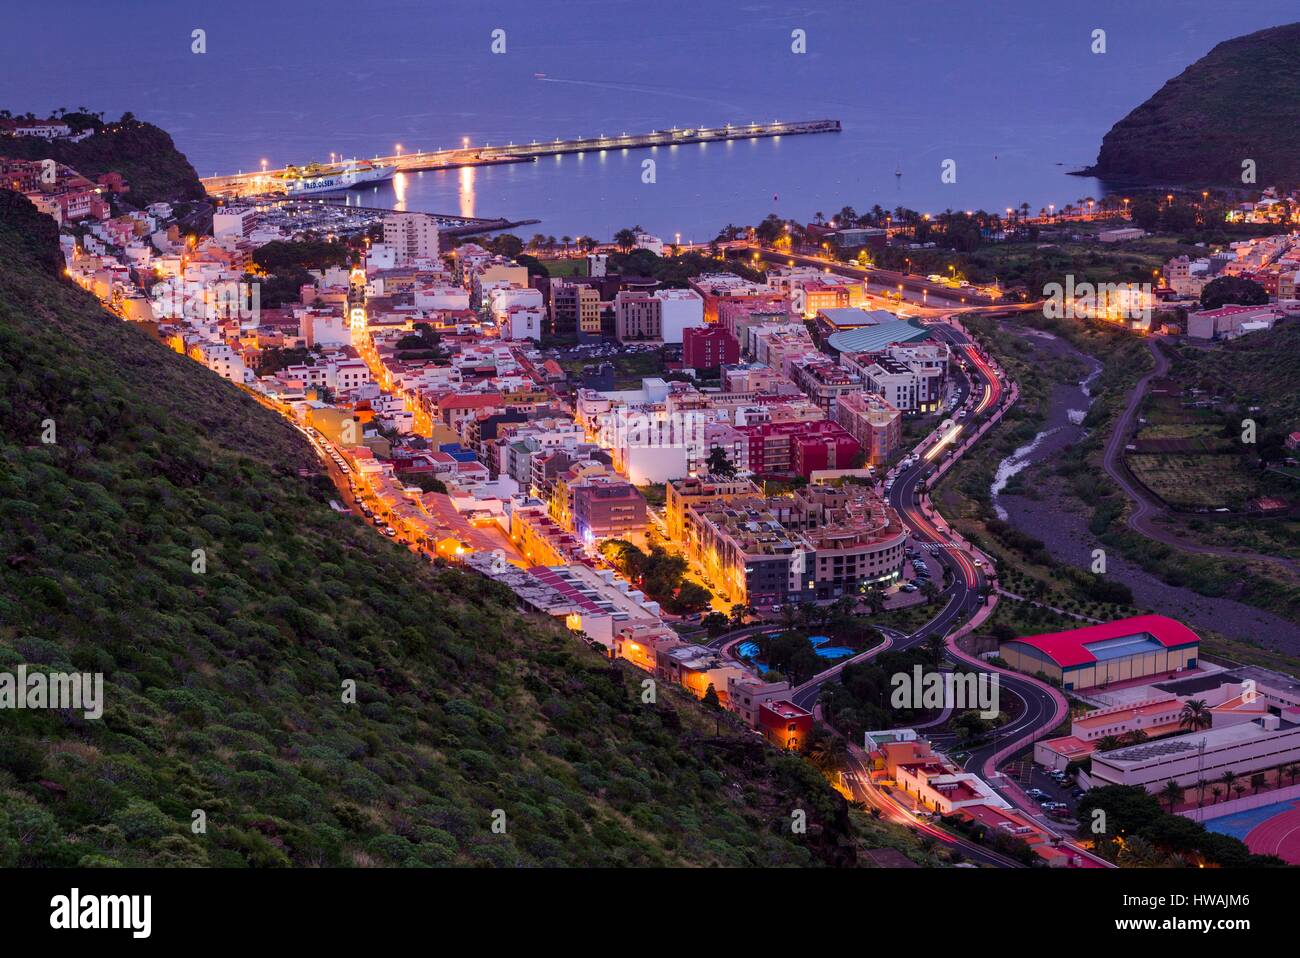 Spain, Canary Islands, La Gomera, San Sebastian de la Gomera, elevated view of town and port dawn Stock Photo